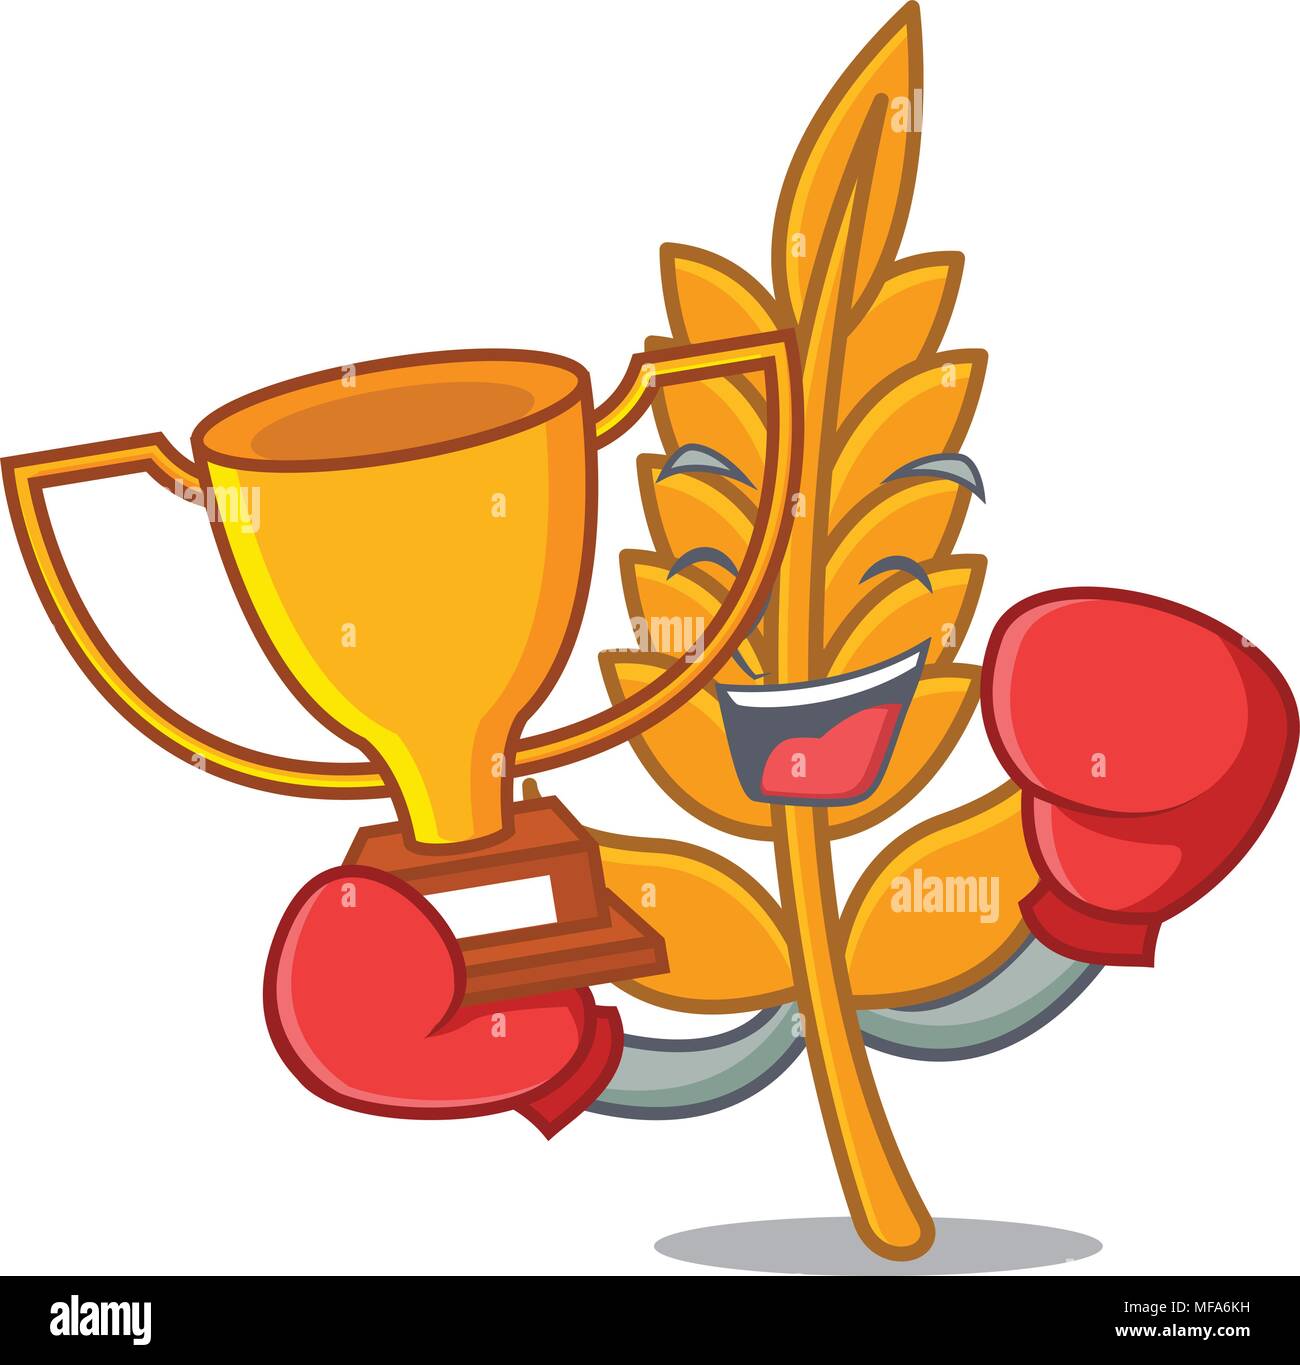 Gagnant de boxe mascot cartoon style blé Illustration de Vecteur